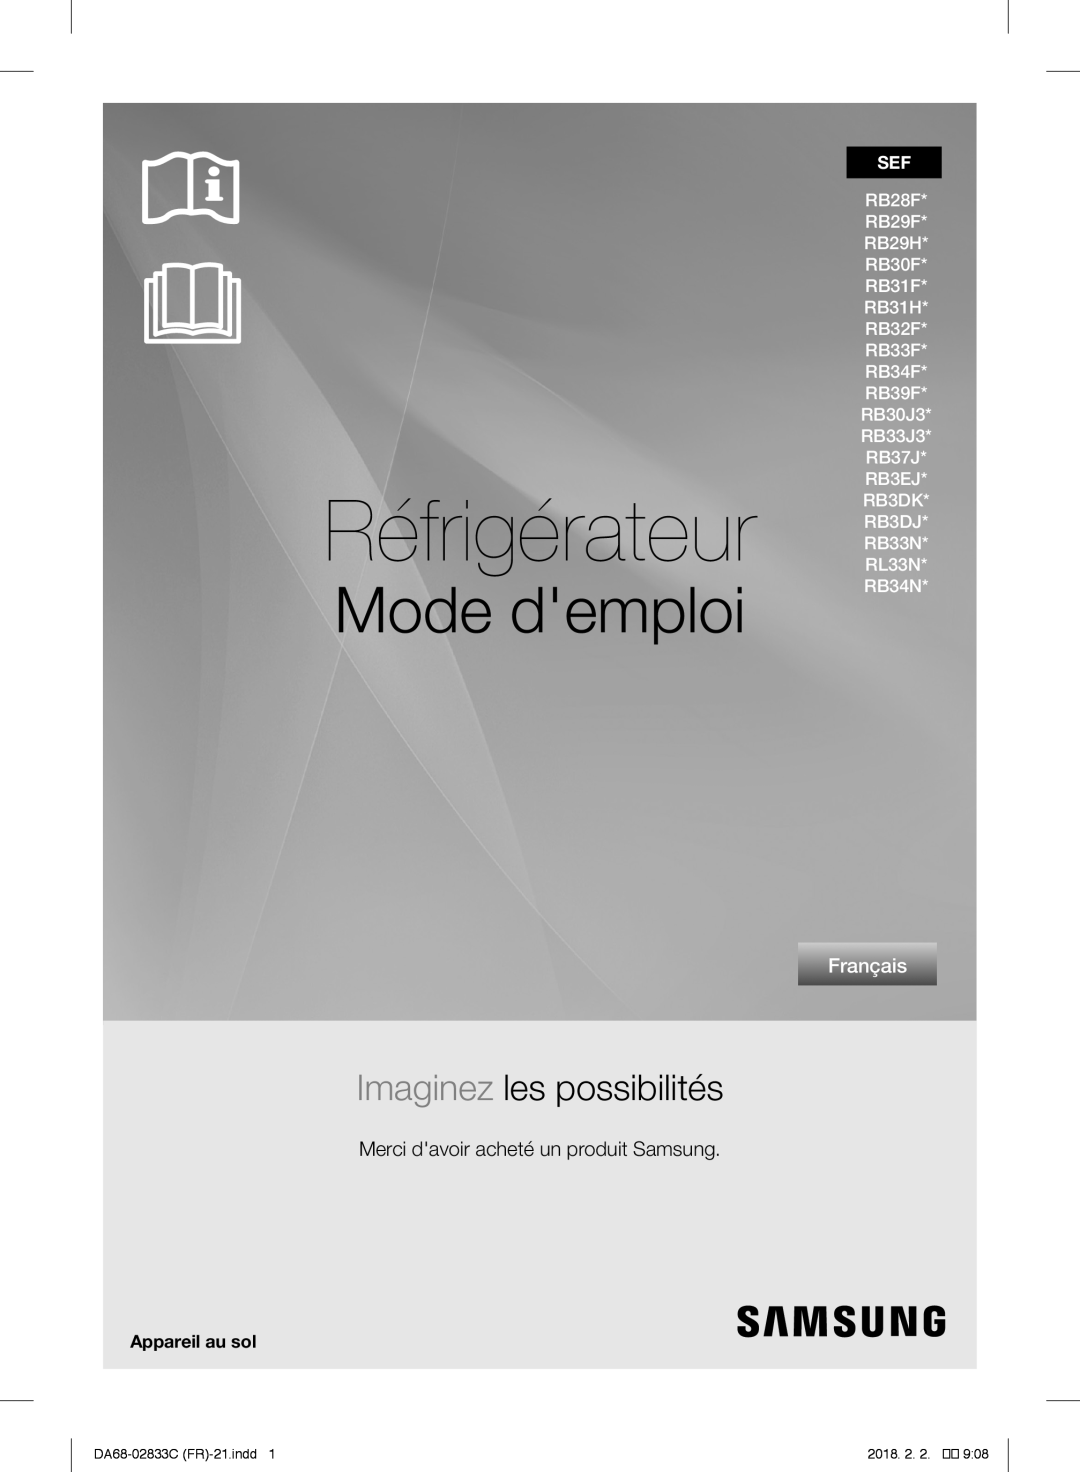 Samsung RL29FEJNBSS/EG manual Frigorifero, manuale utente, immagina le possibilità, Italiano, DA68-02833G IT-20.indd, 1116 